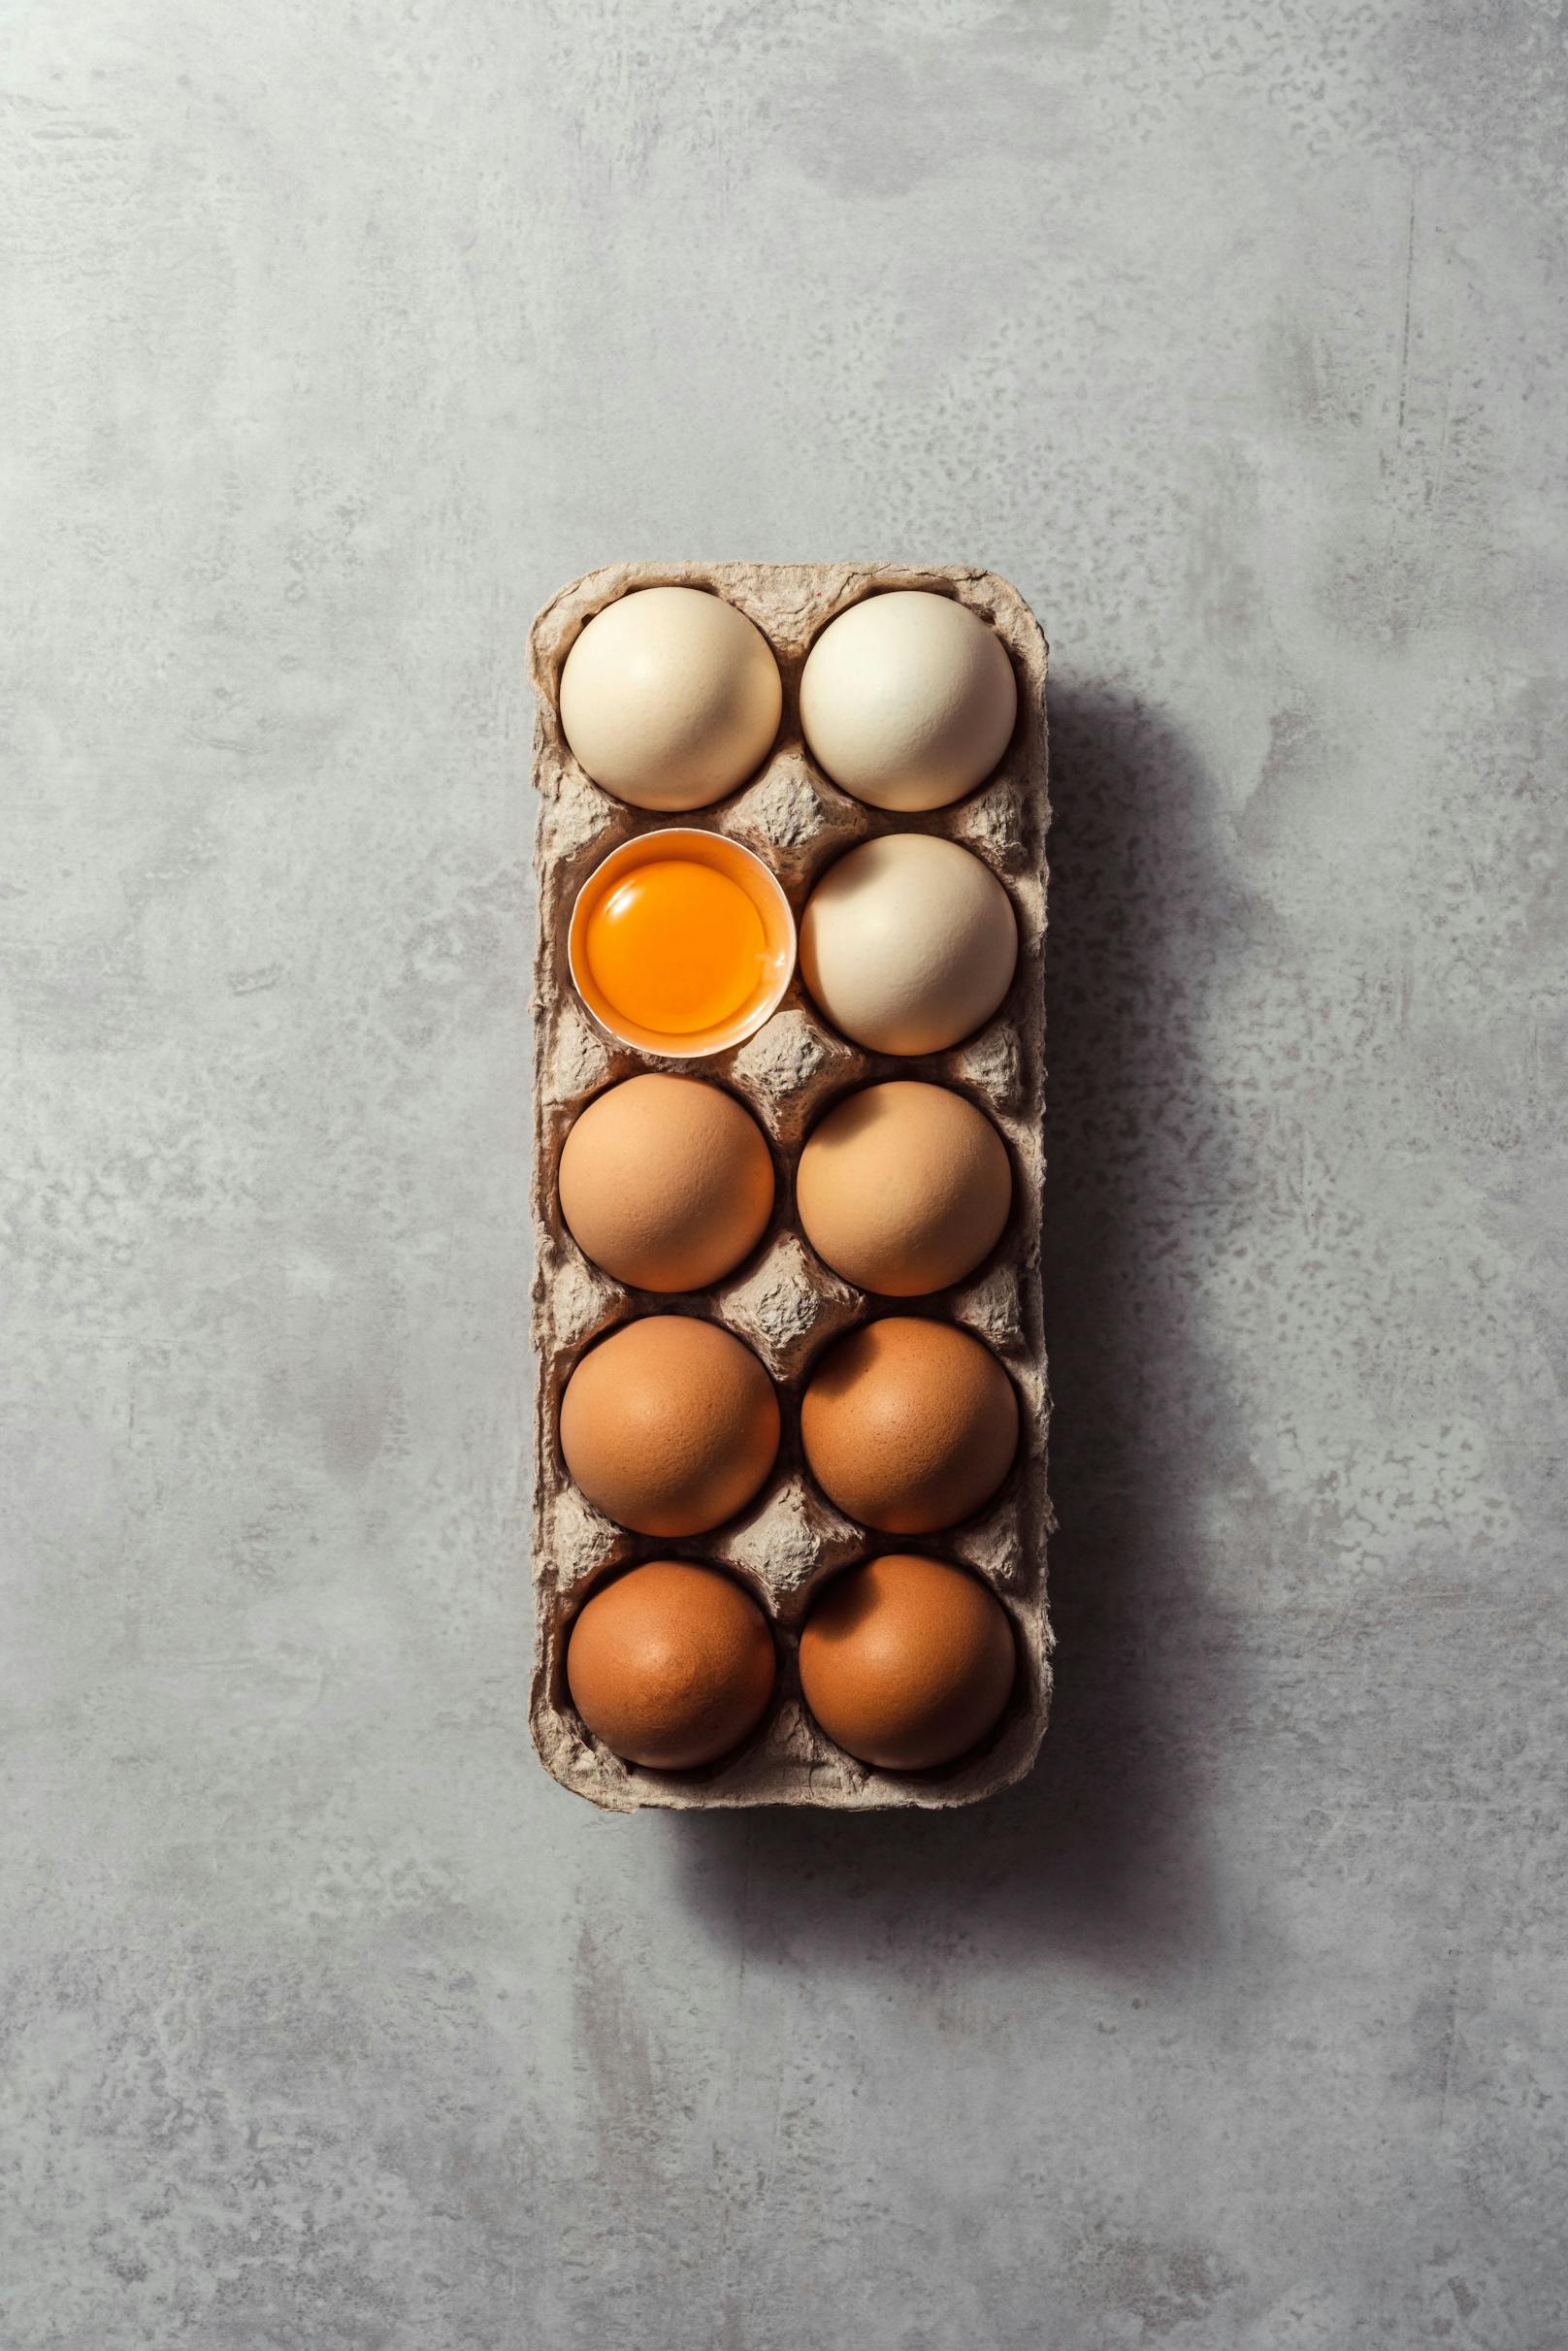 <strong>Eier: </strong>Rohe Eier, aber auch Lebensmittel, die solche enthalten, können Salmonellen enthalten - kleine, stäbchenförmige Bakterien, die eine Lebensmittelvergiftung auslösen. Nicht umsonst gelten als "risikoreiches Lebensmittel". Am besten werden sie nur durchgegart gegessen, das bedeutet: Eiweiß und auch Eigelb sollten fest sein.